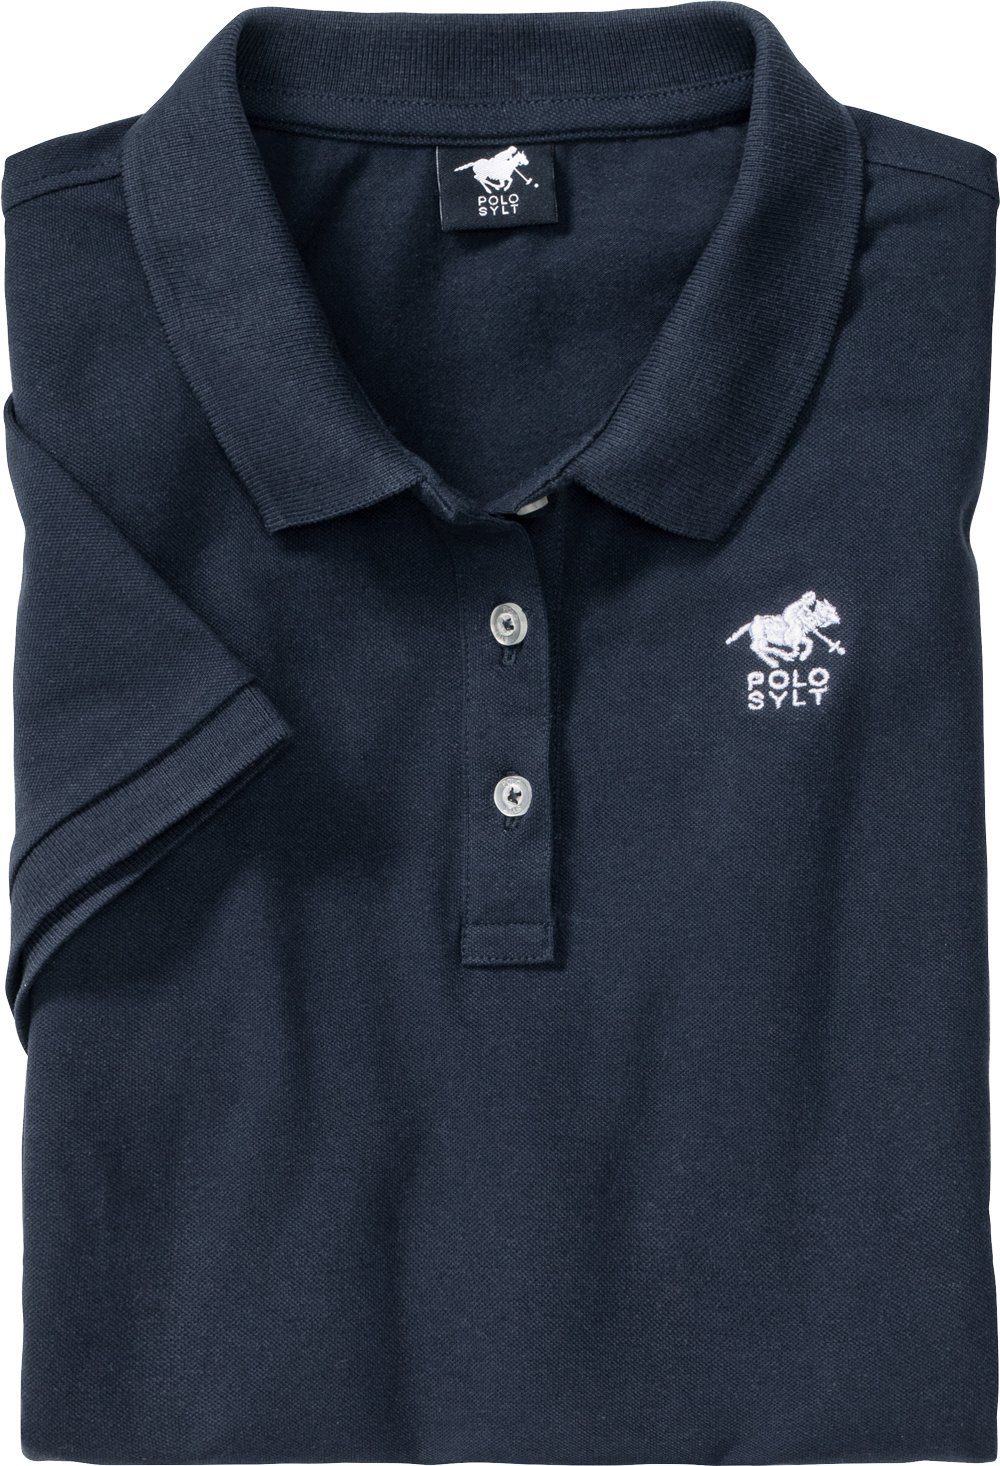 Polo Sylt Poloshirt aus und pflegeleichtem anschmiegsamem marine Stretch-Piqué weichem